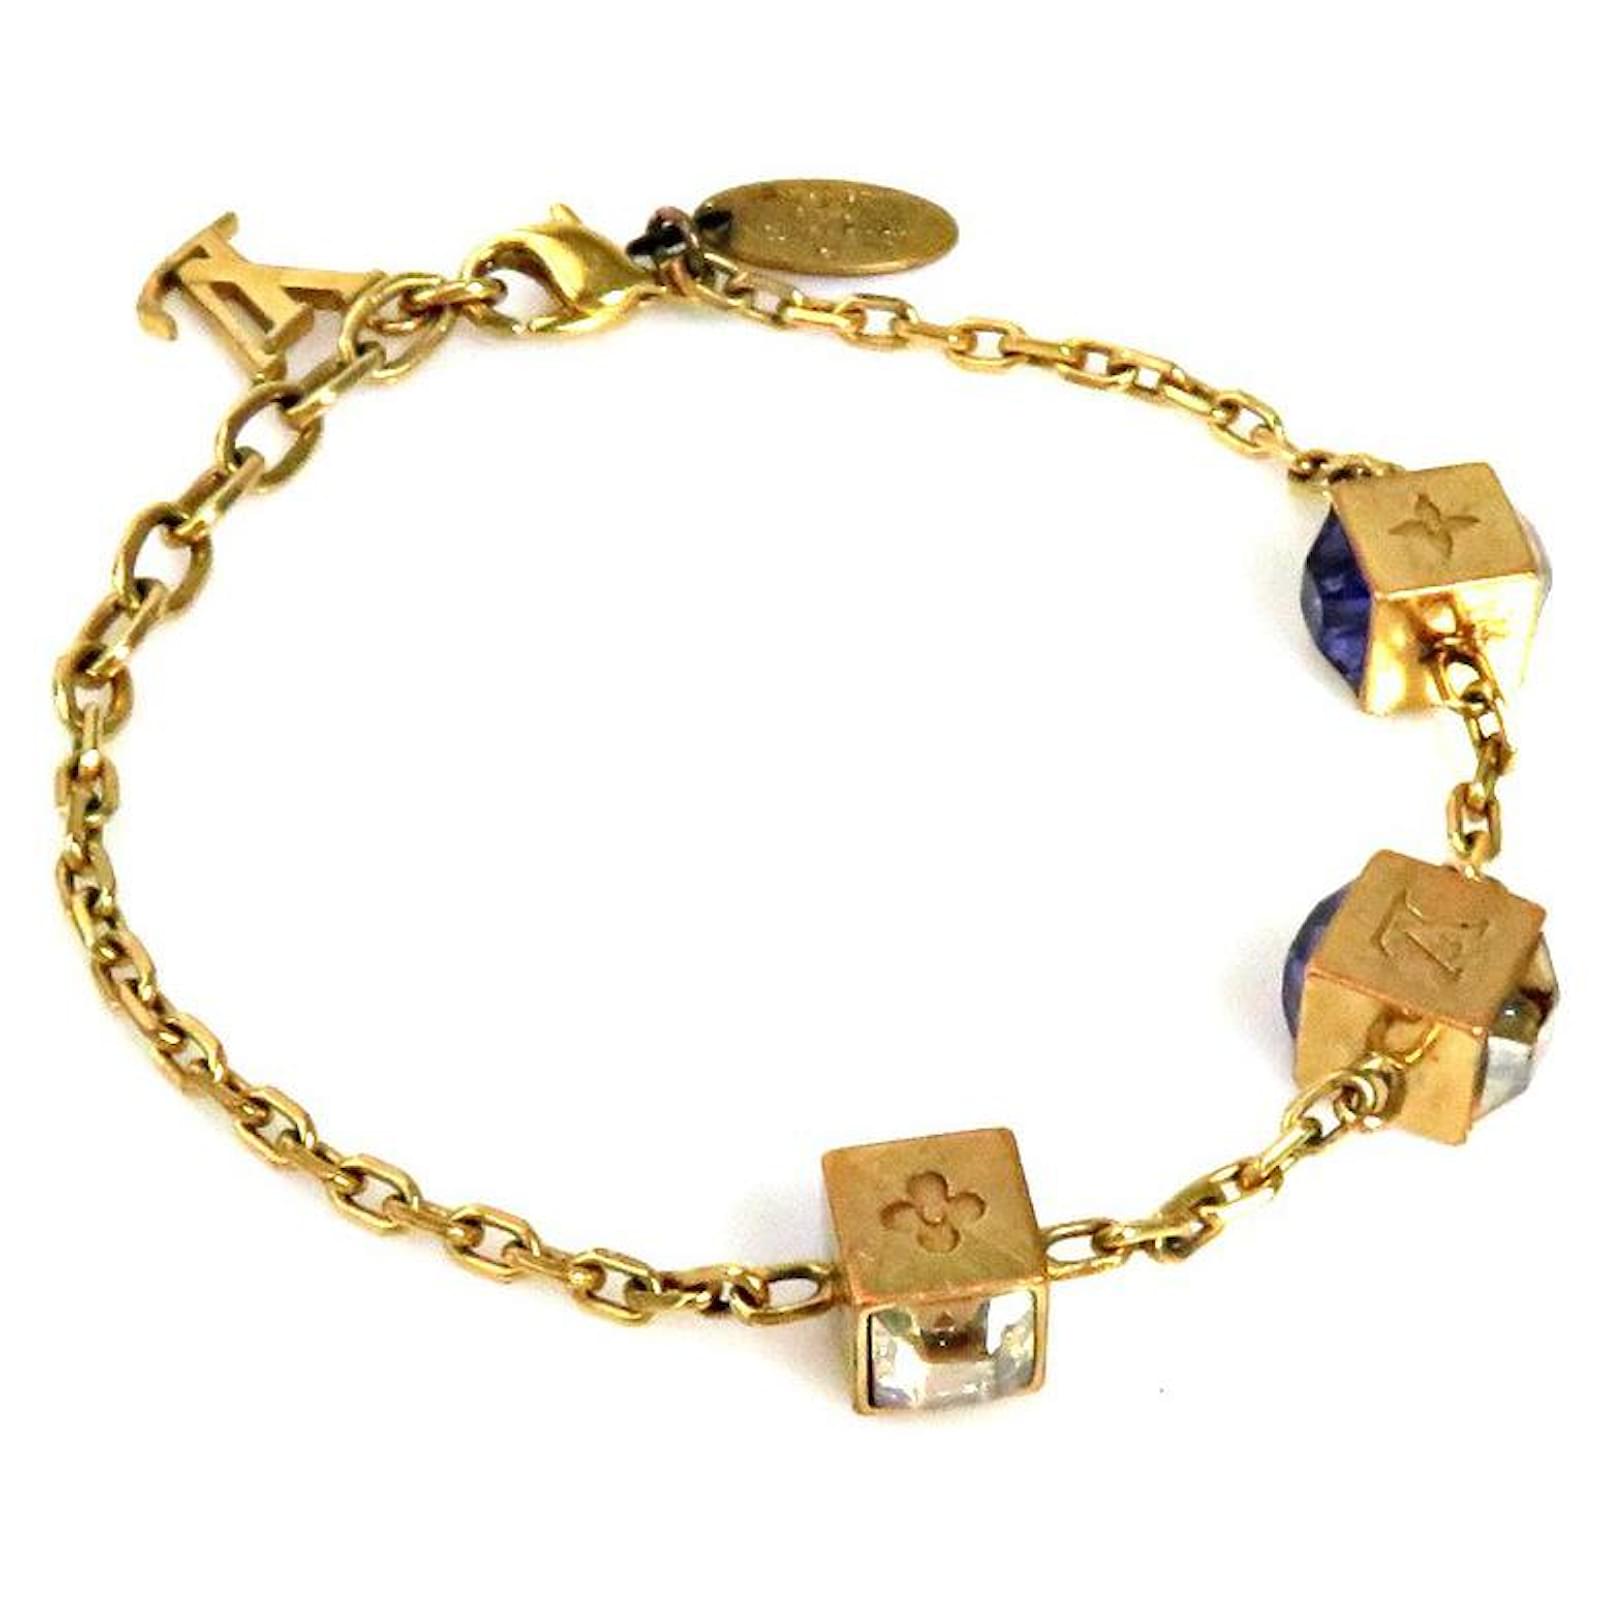 Louis Vuitton Crystal Bracelet